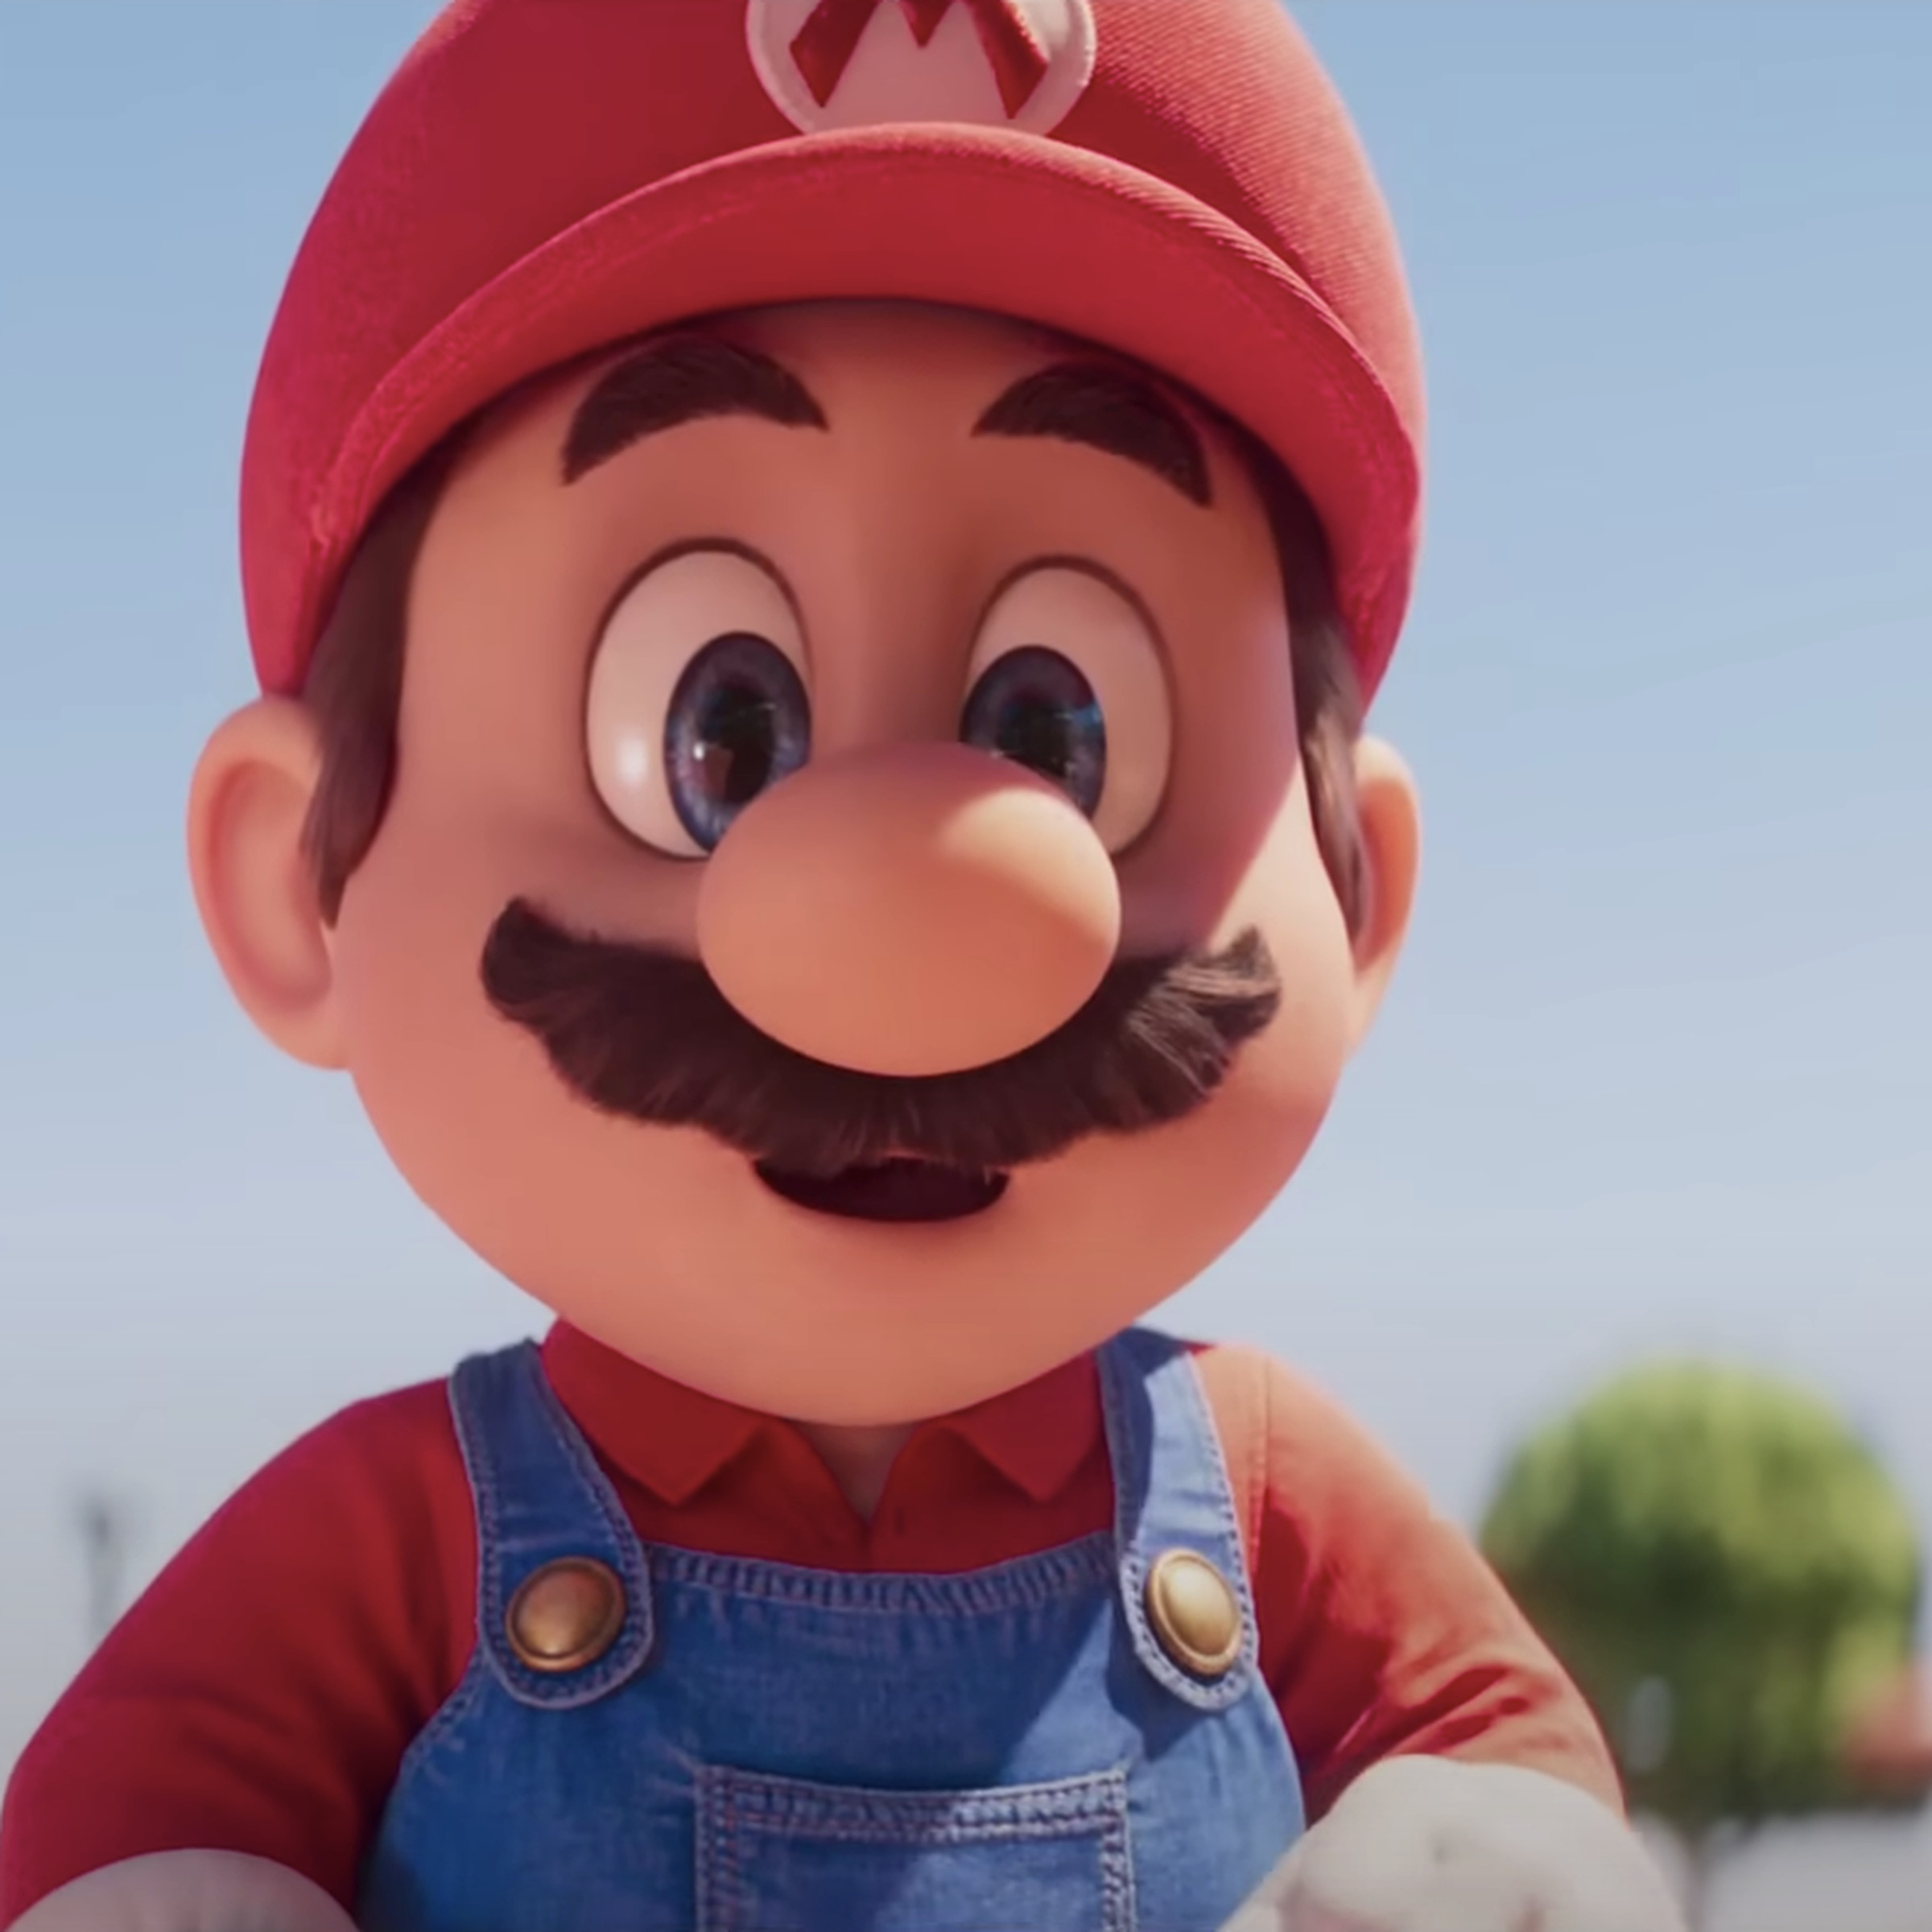 Mario in The Super Mario Bros. Movie.